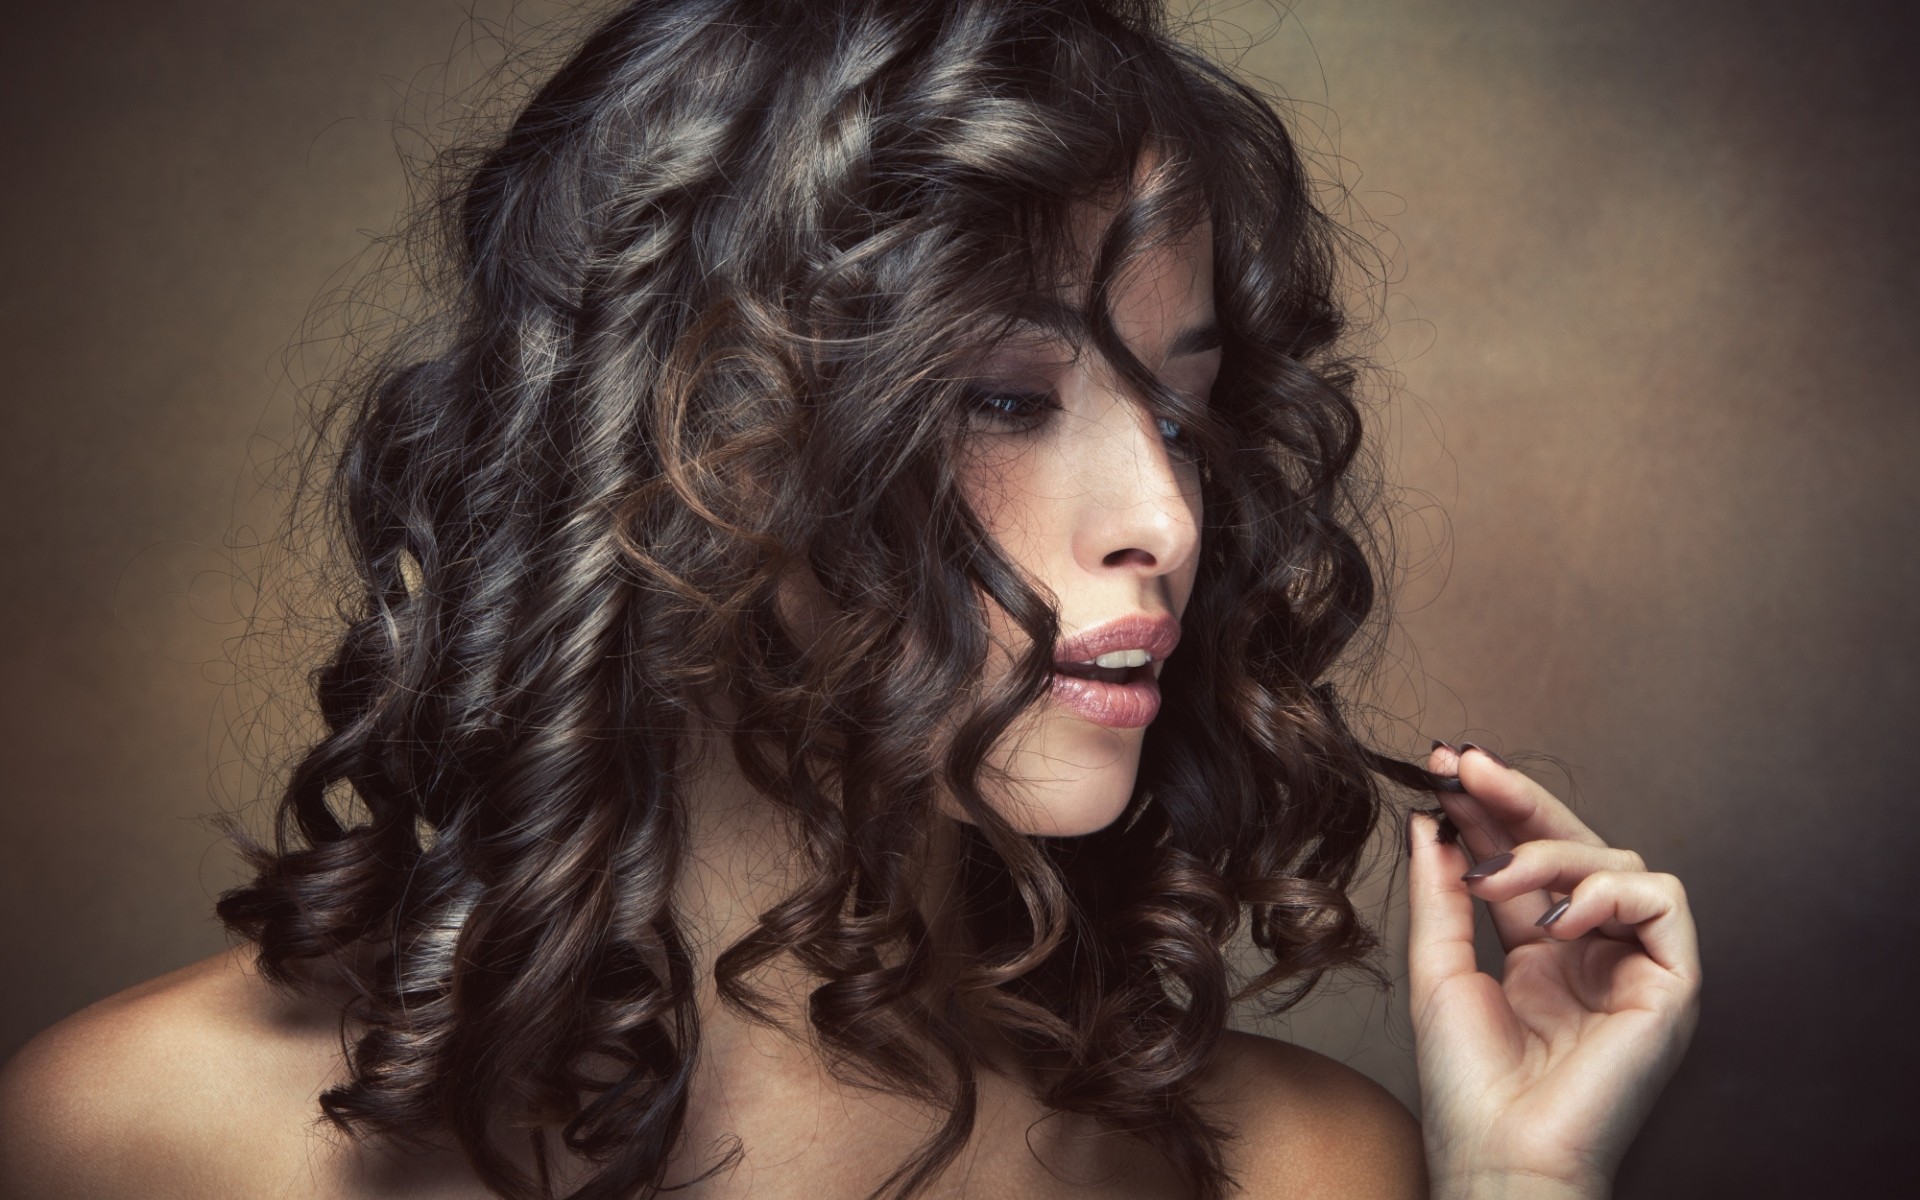 women model face portrait curly hair Wallpaper